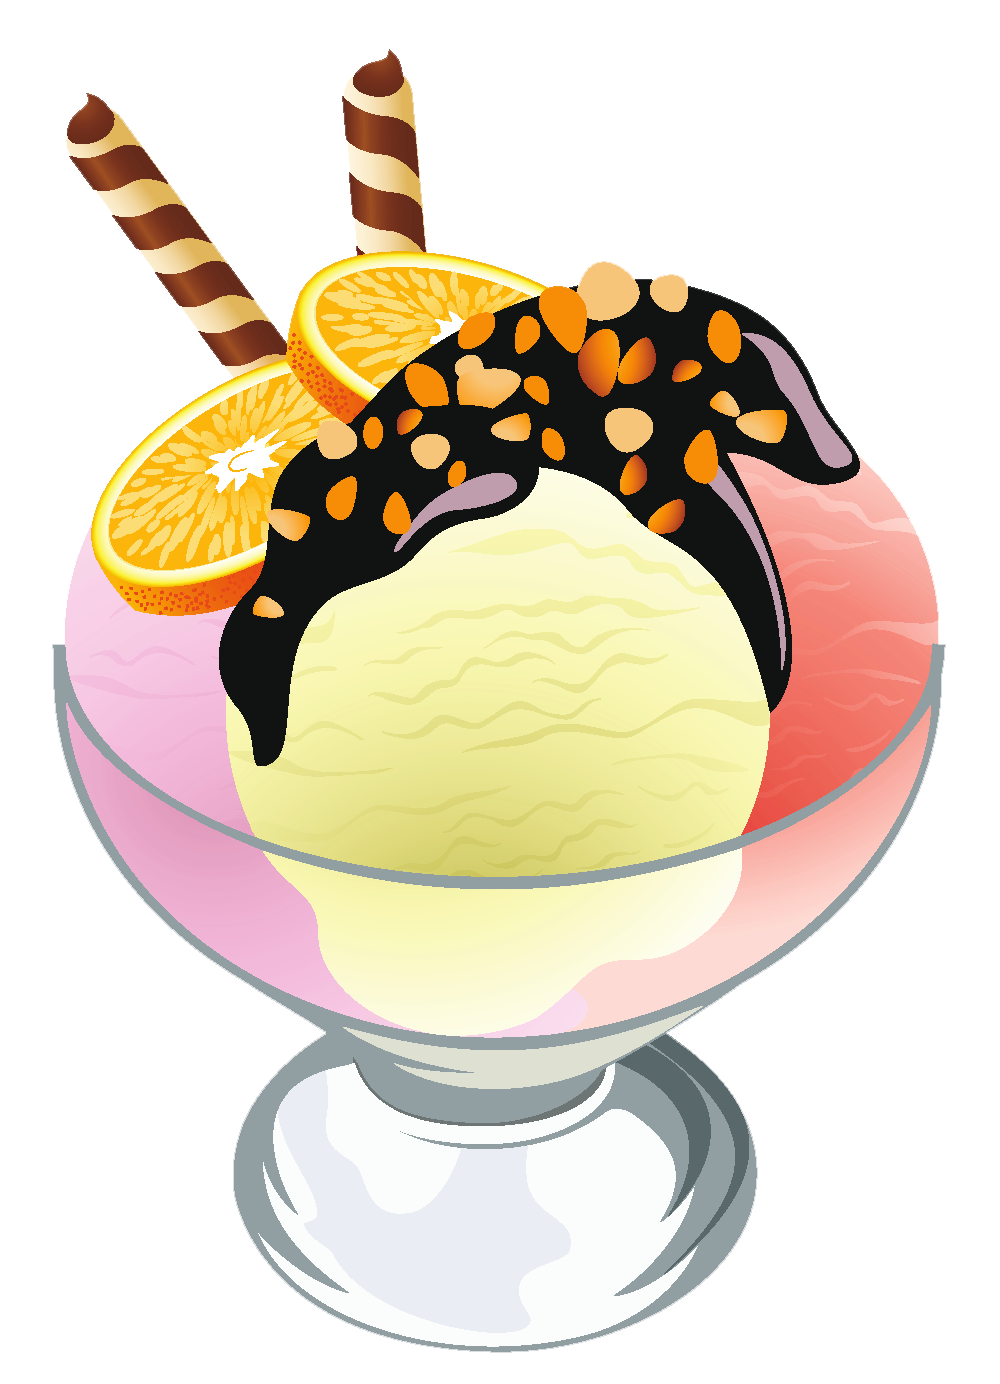 Ice cream sundae clip art